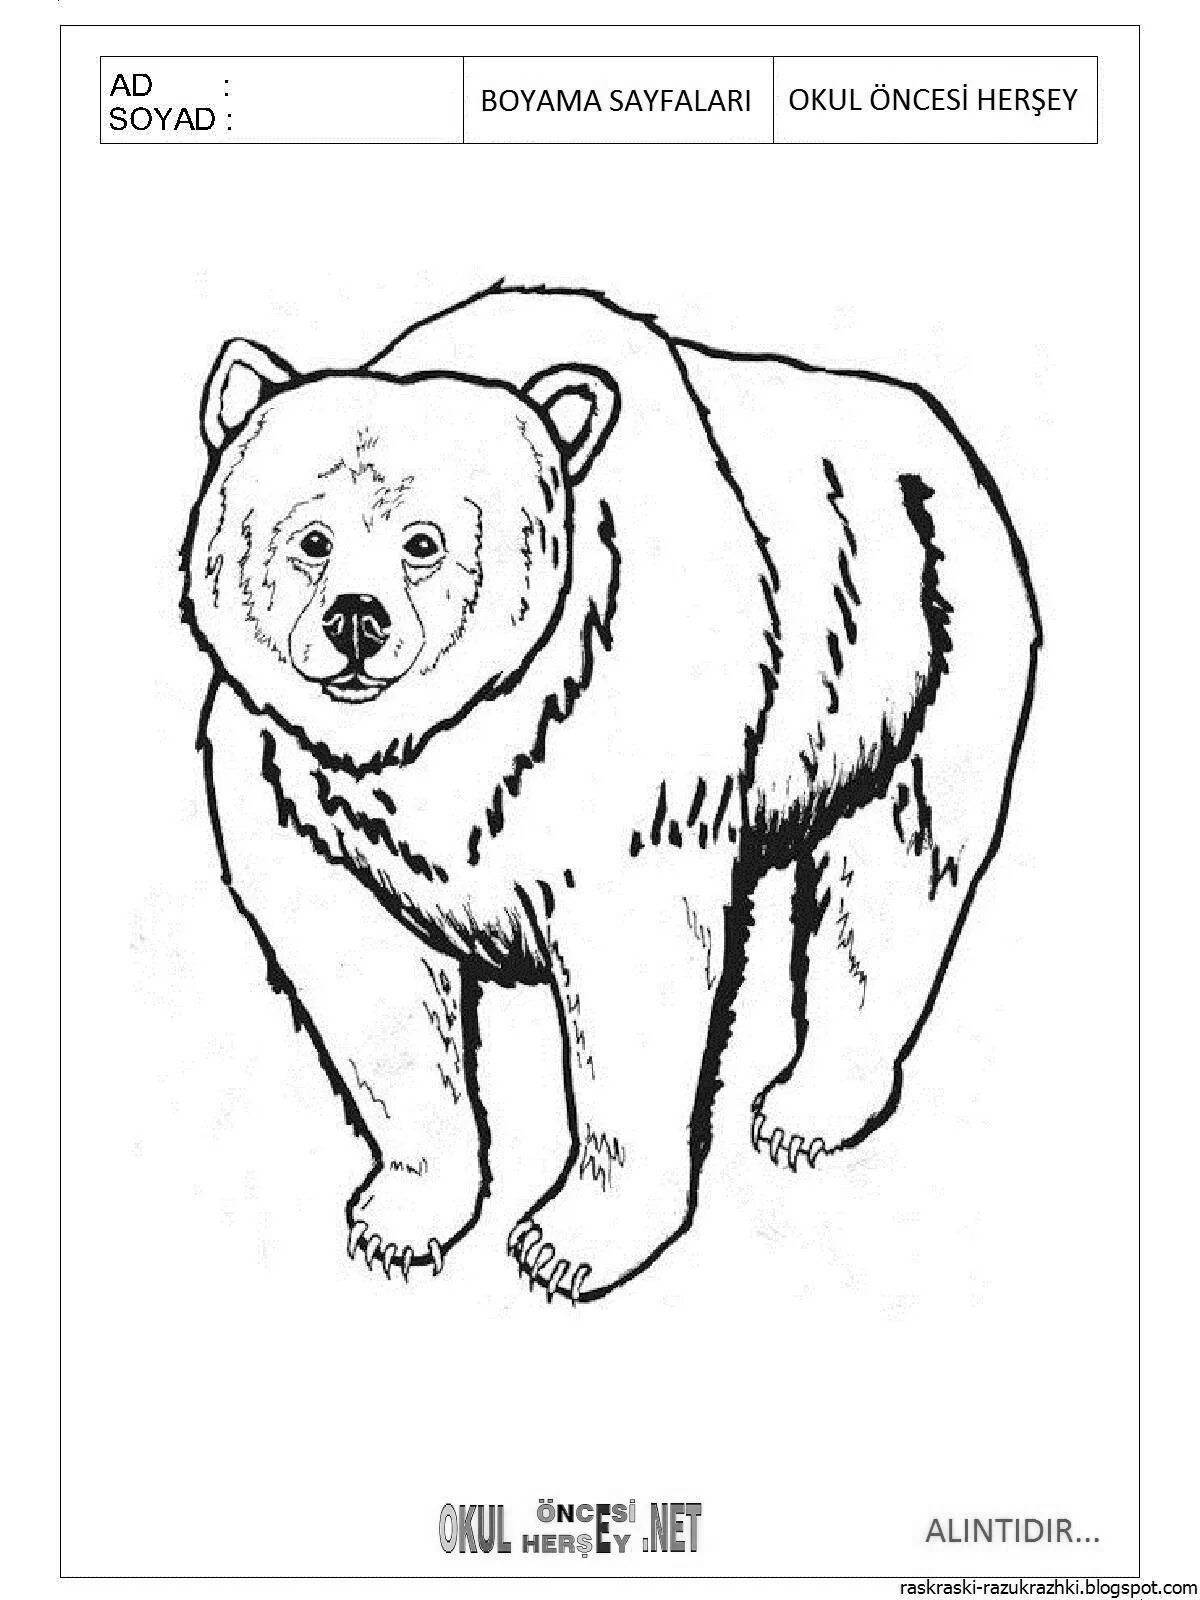 Бурый медведь раскраска - 63 фото